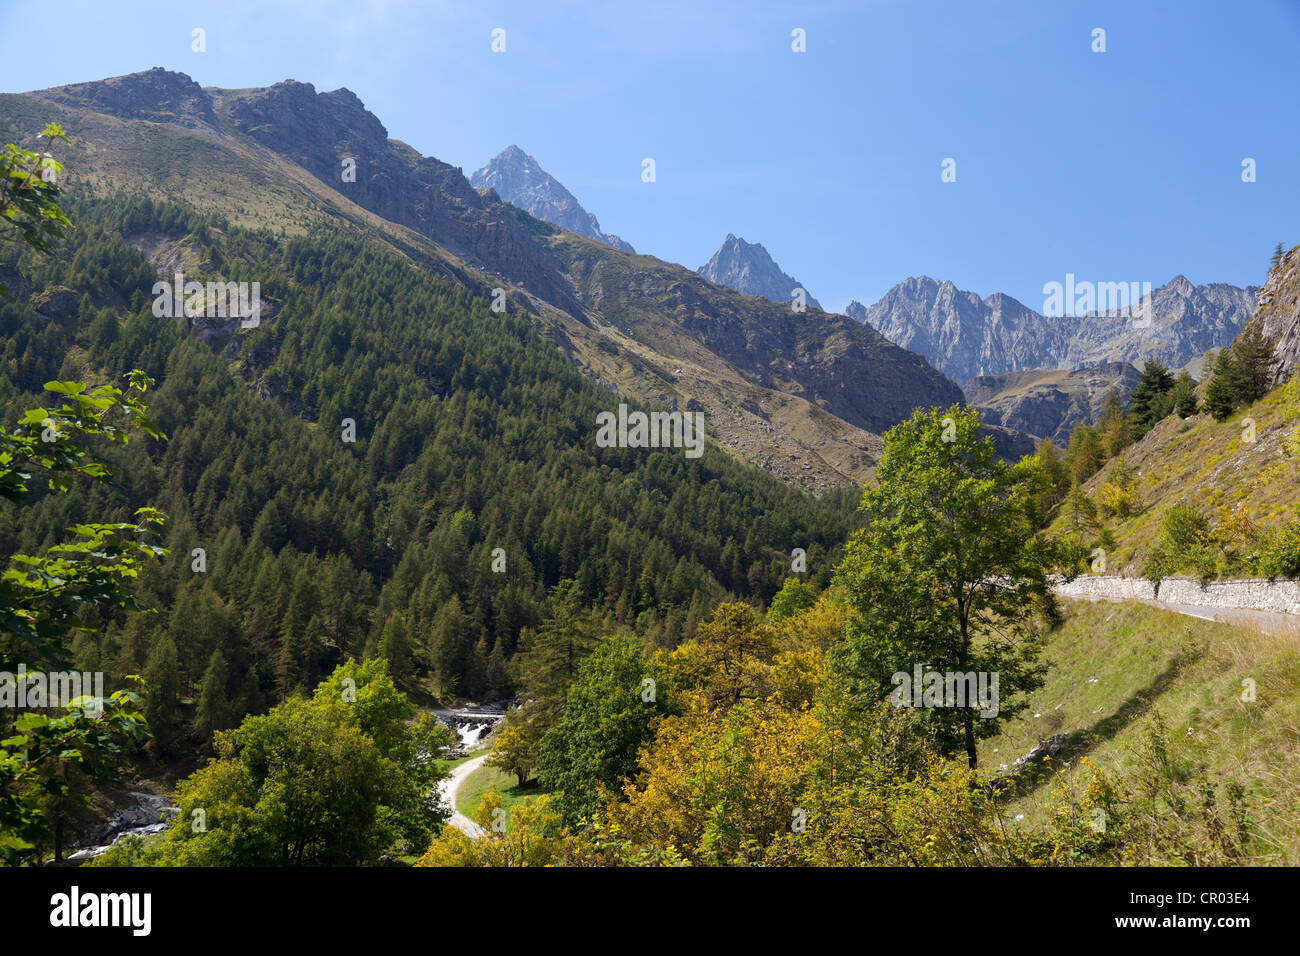 Valle vallée du Pô, province de Coni, Piémont, Italie, Europe Banque D'Images